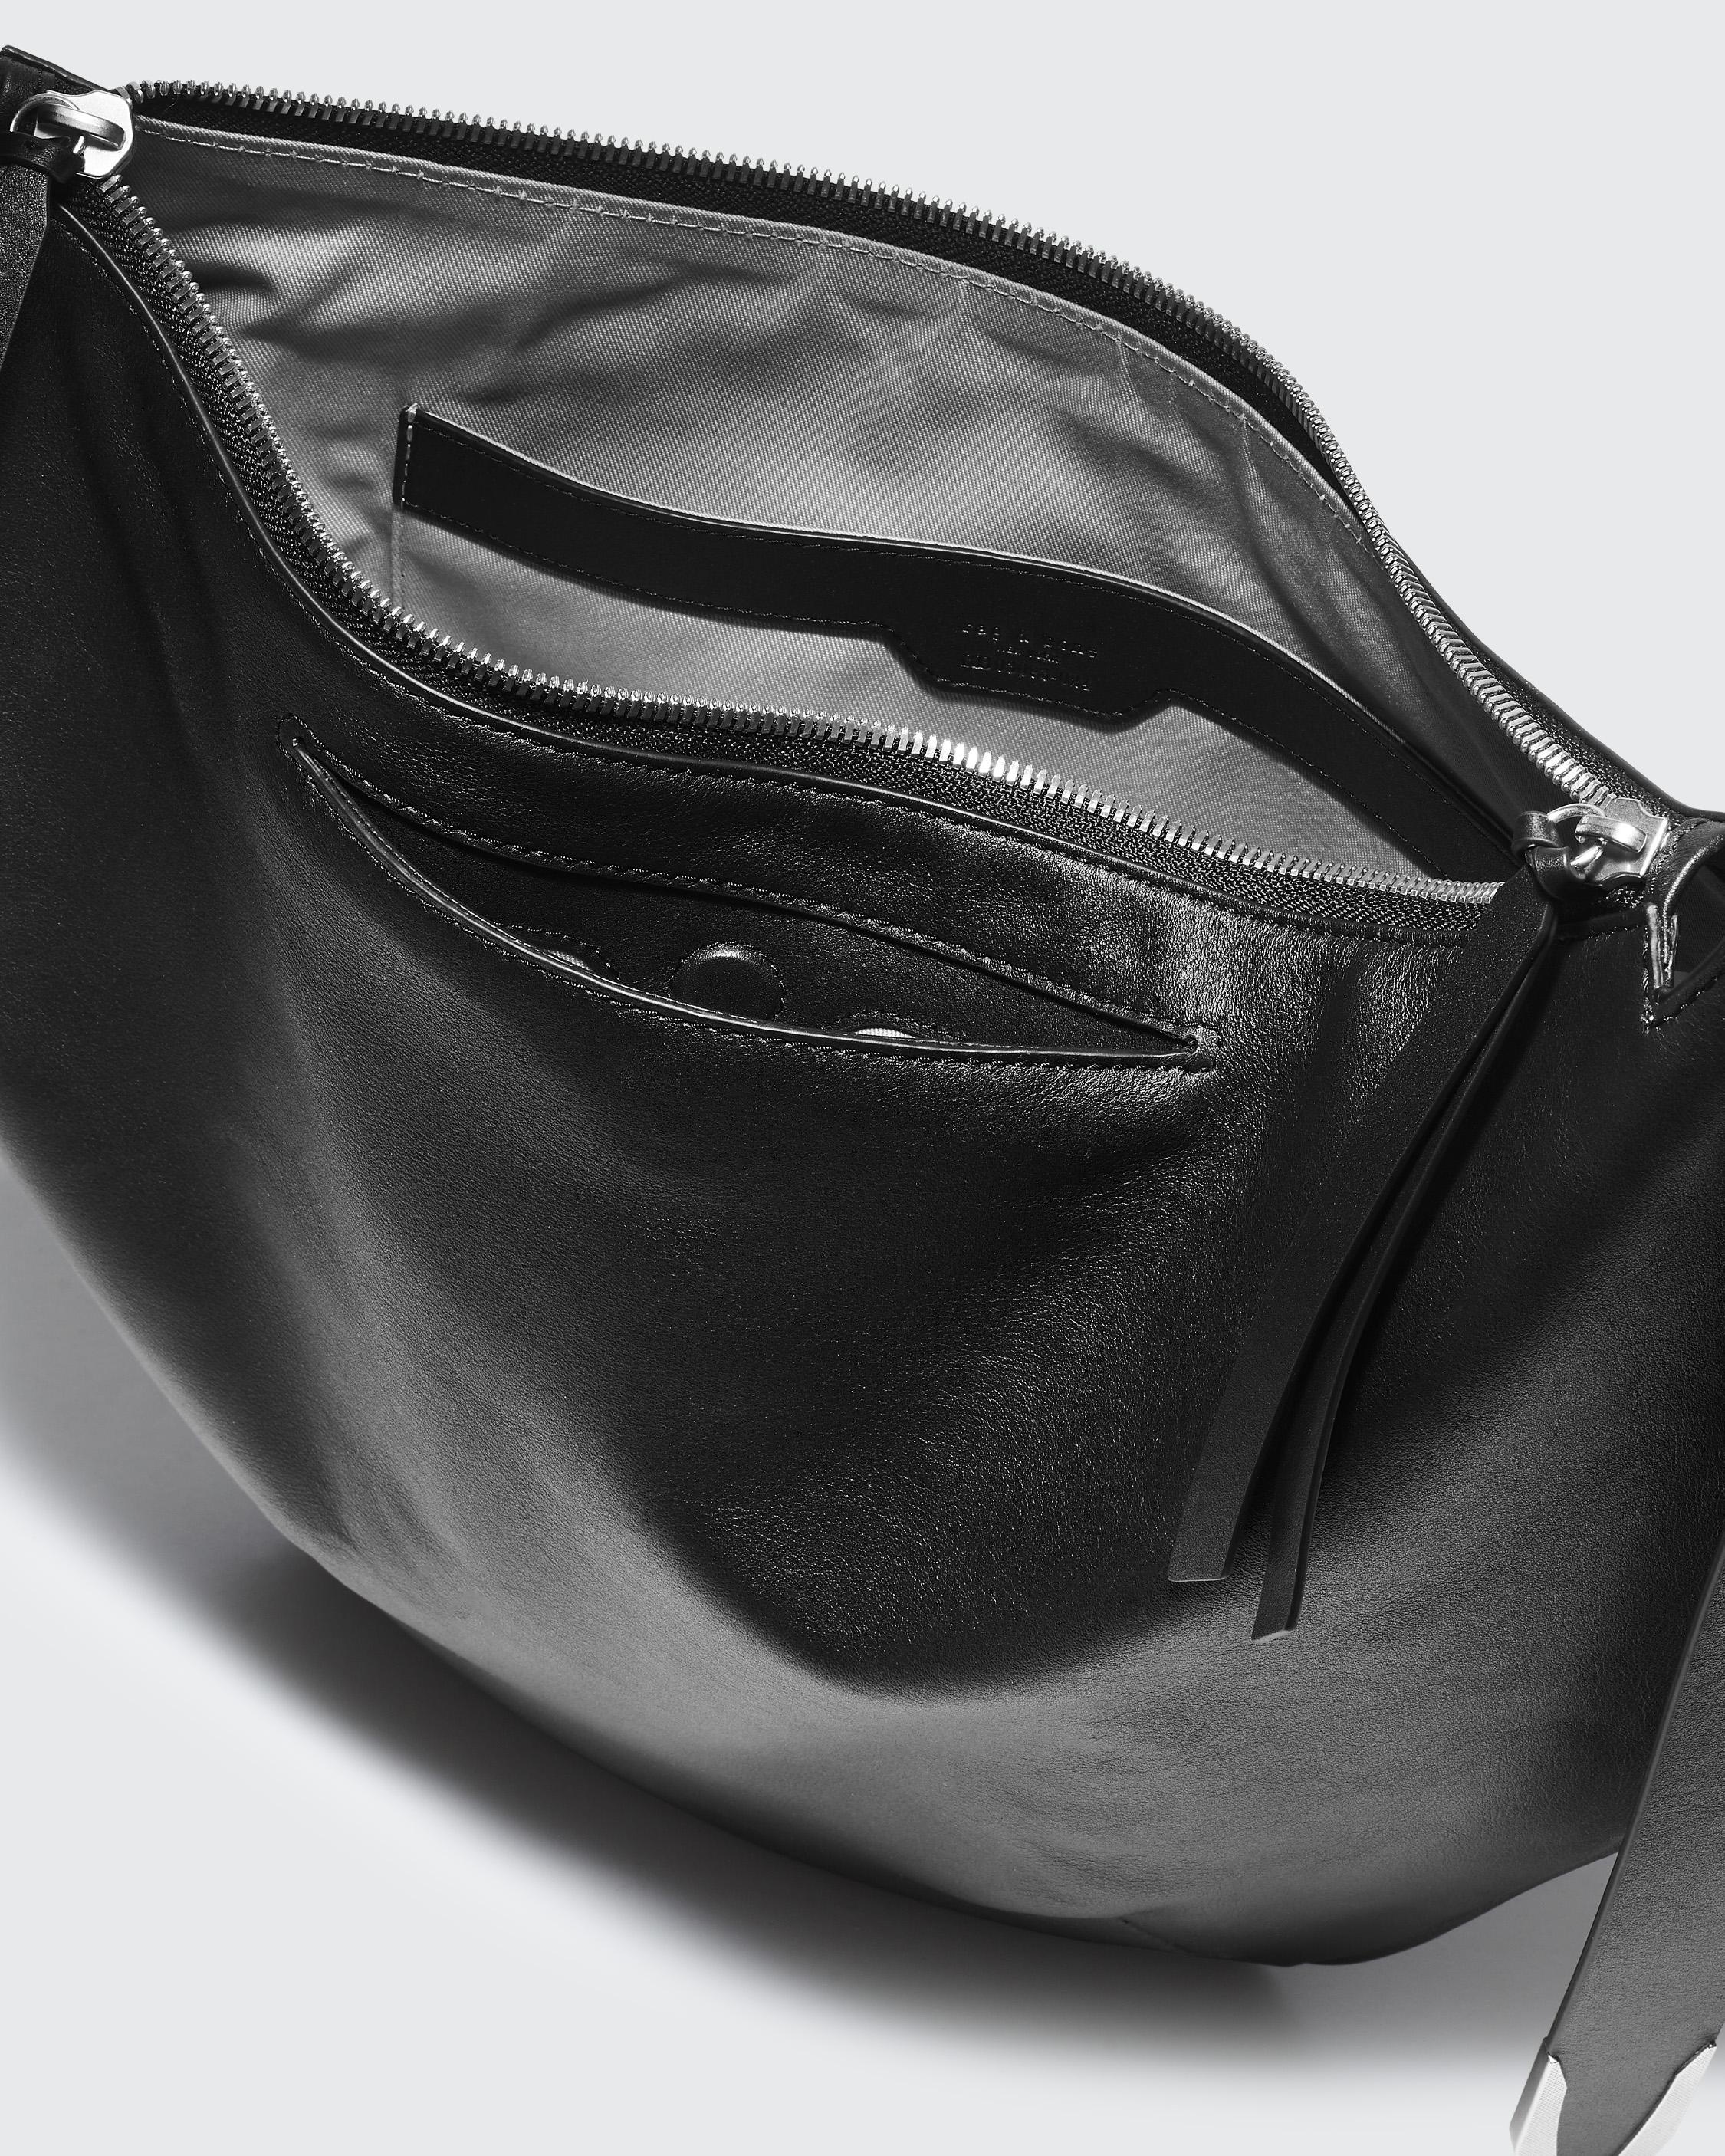 Spire Shoulder Bag - Leather
Medium Shoulder Bag - 6